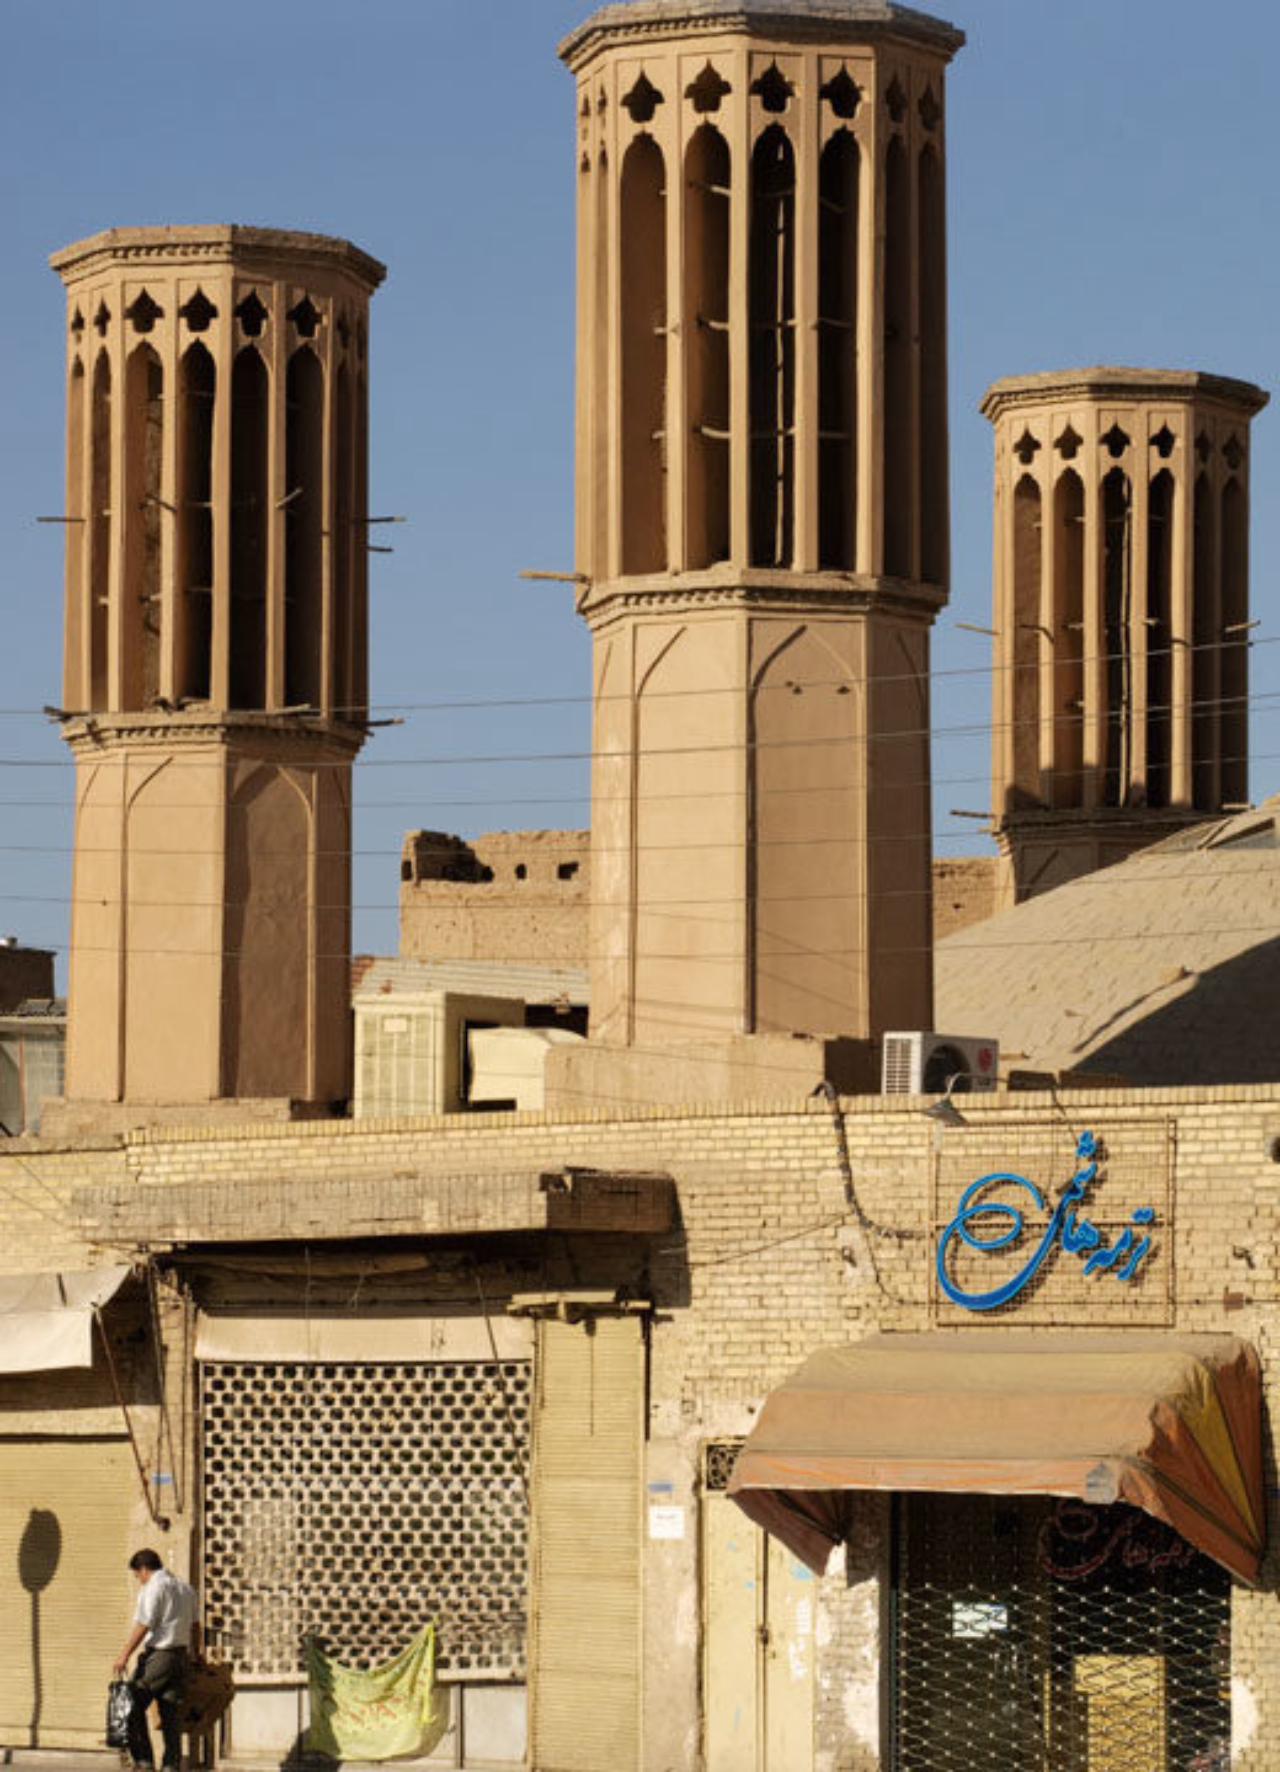 Torre de vento utilizada na cidade de Yazd, no Irã.